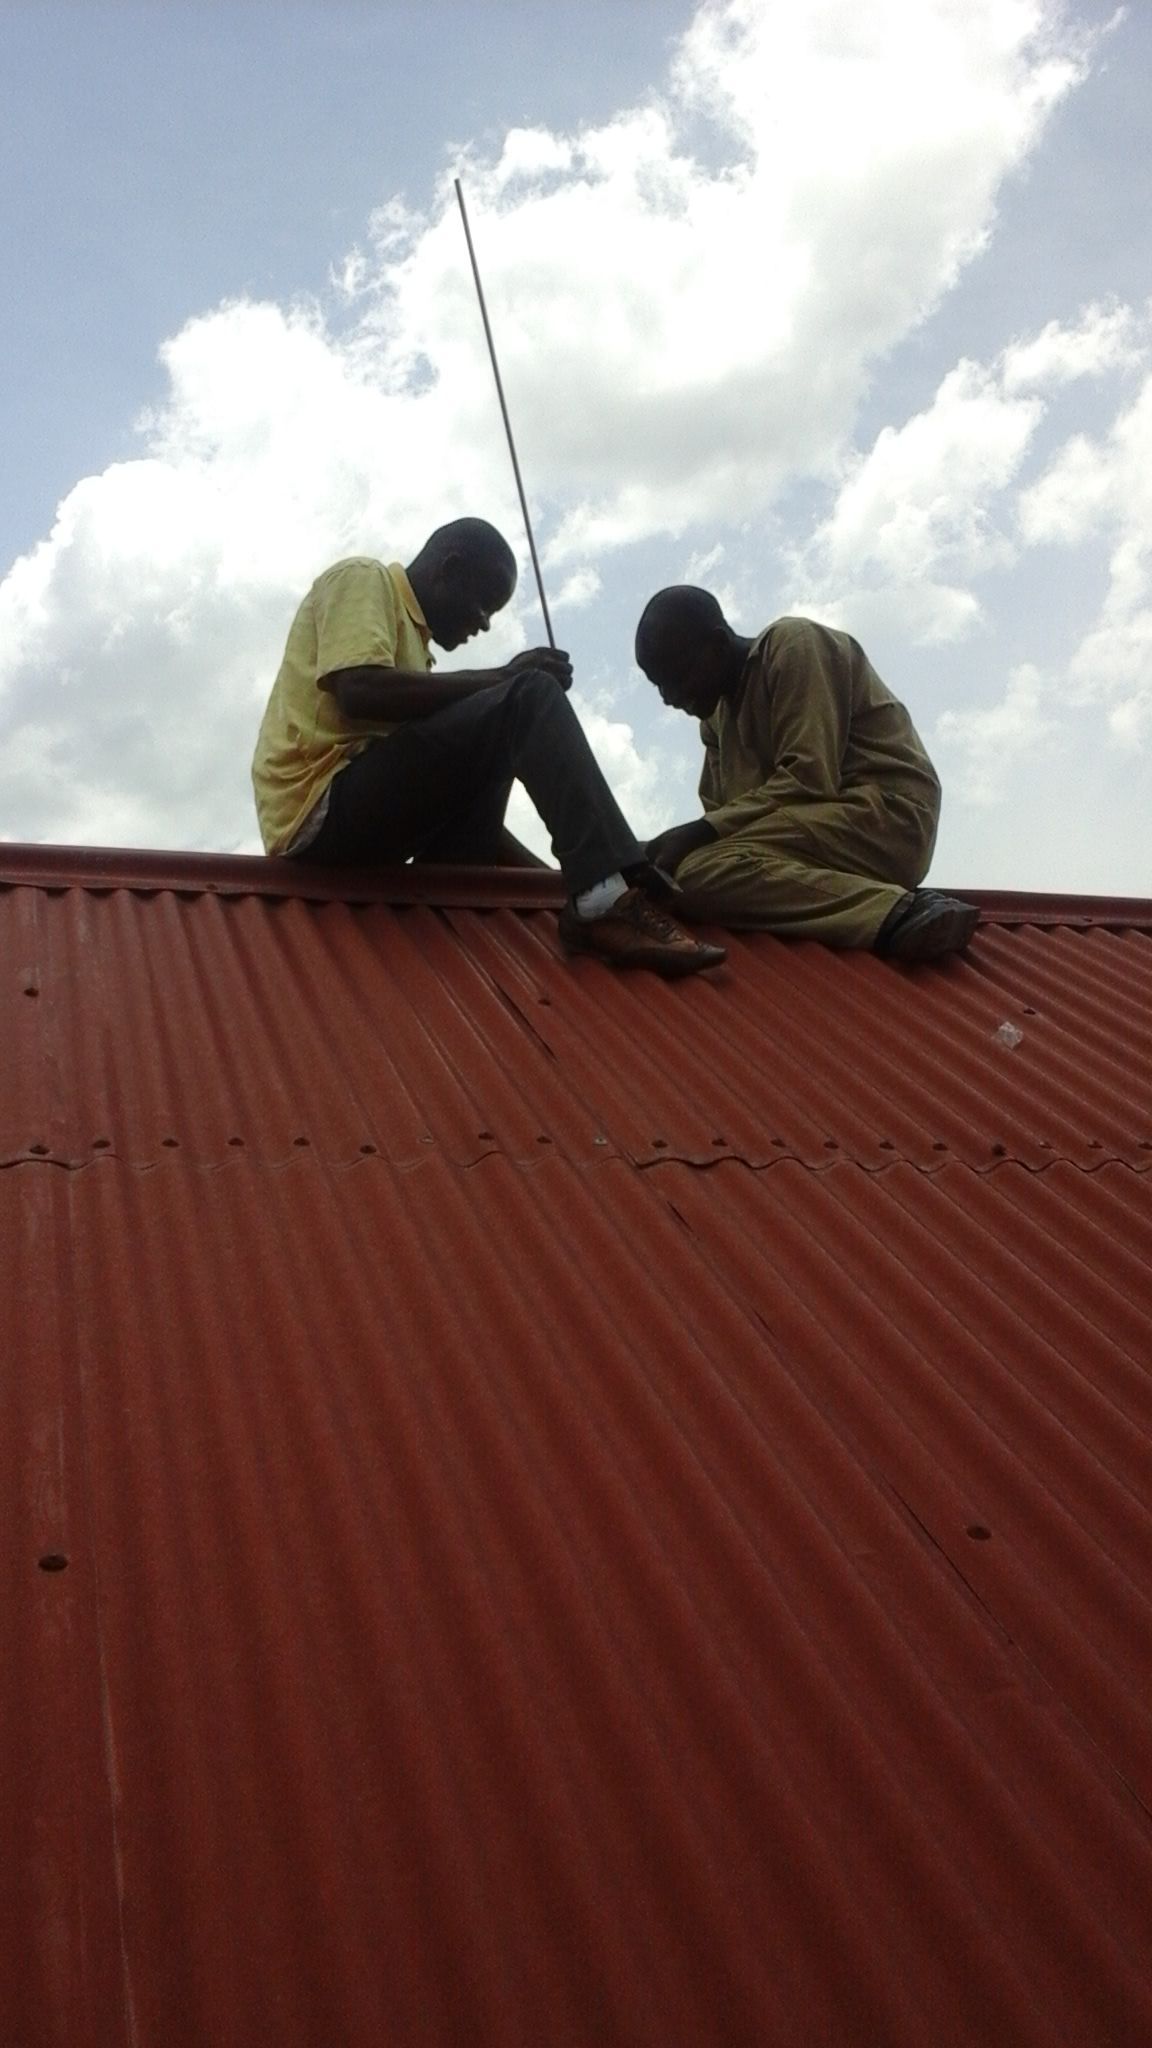 Installing lightning rods - called 'arrestors' by Ugandans